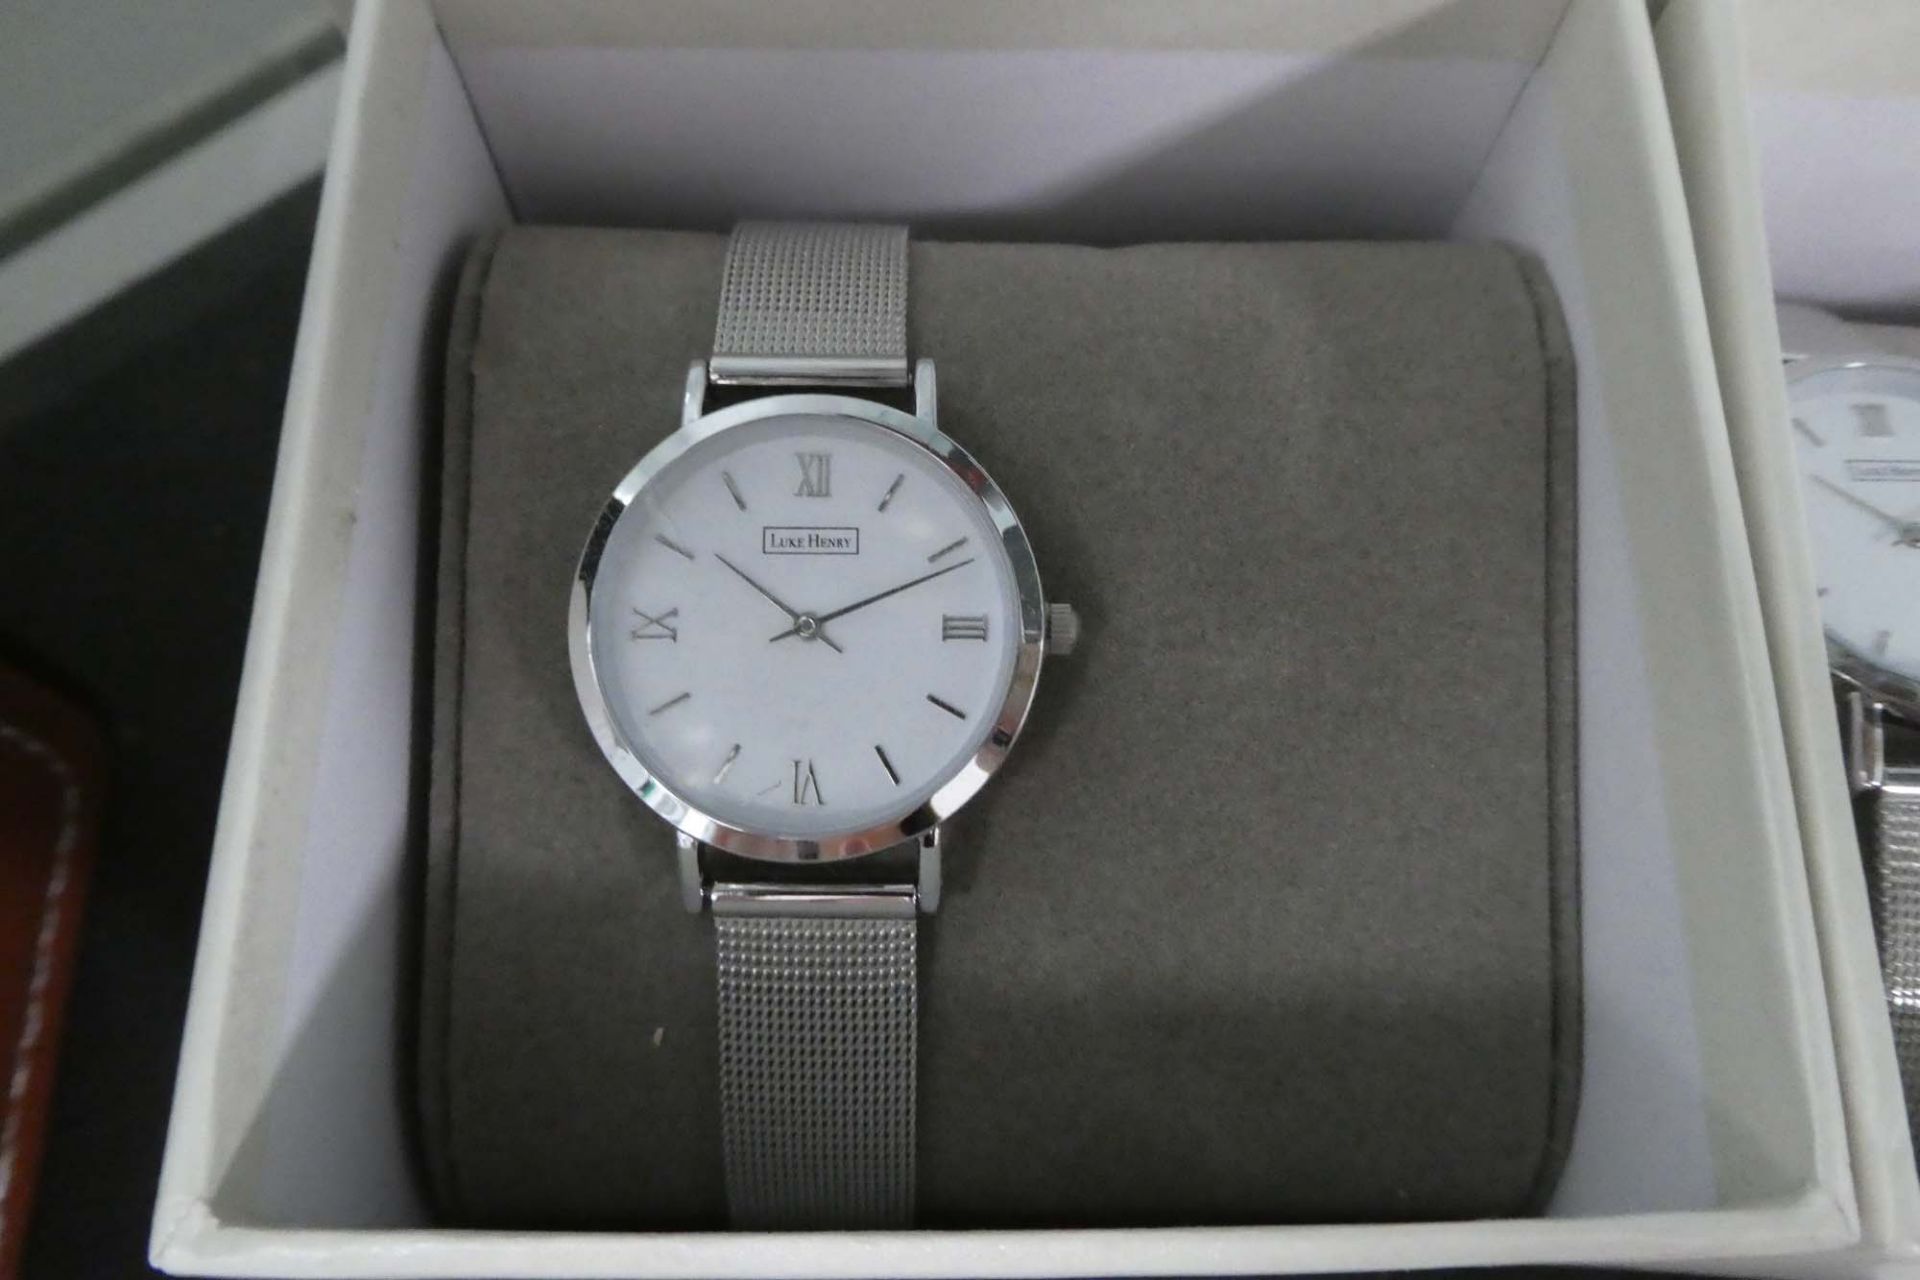 2061 Luke Henry wrist watch with box